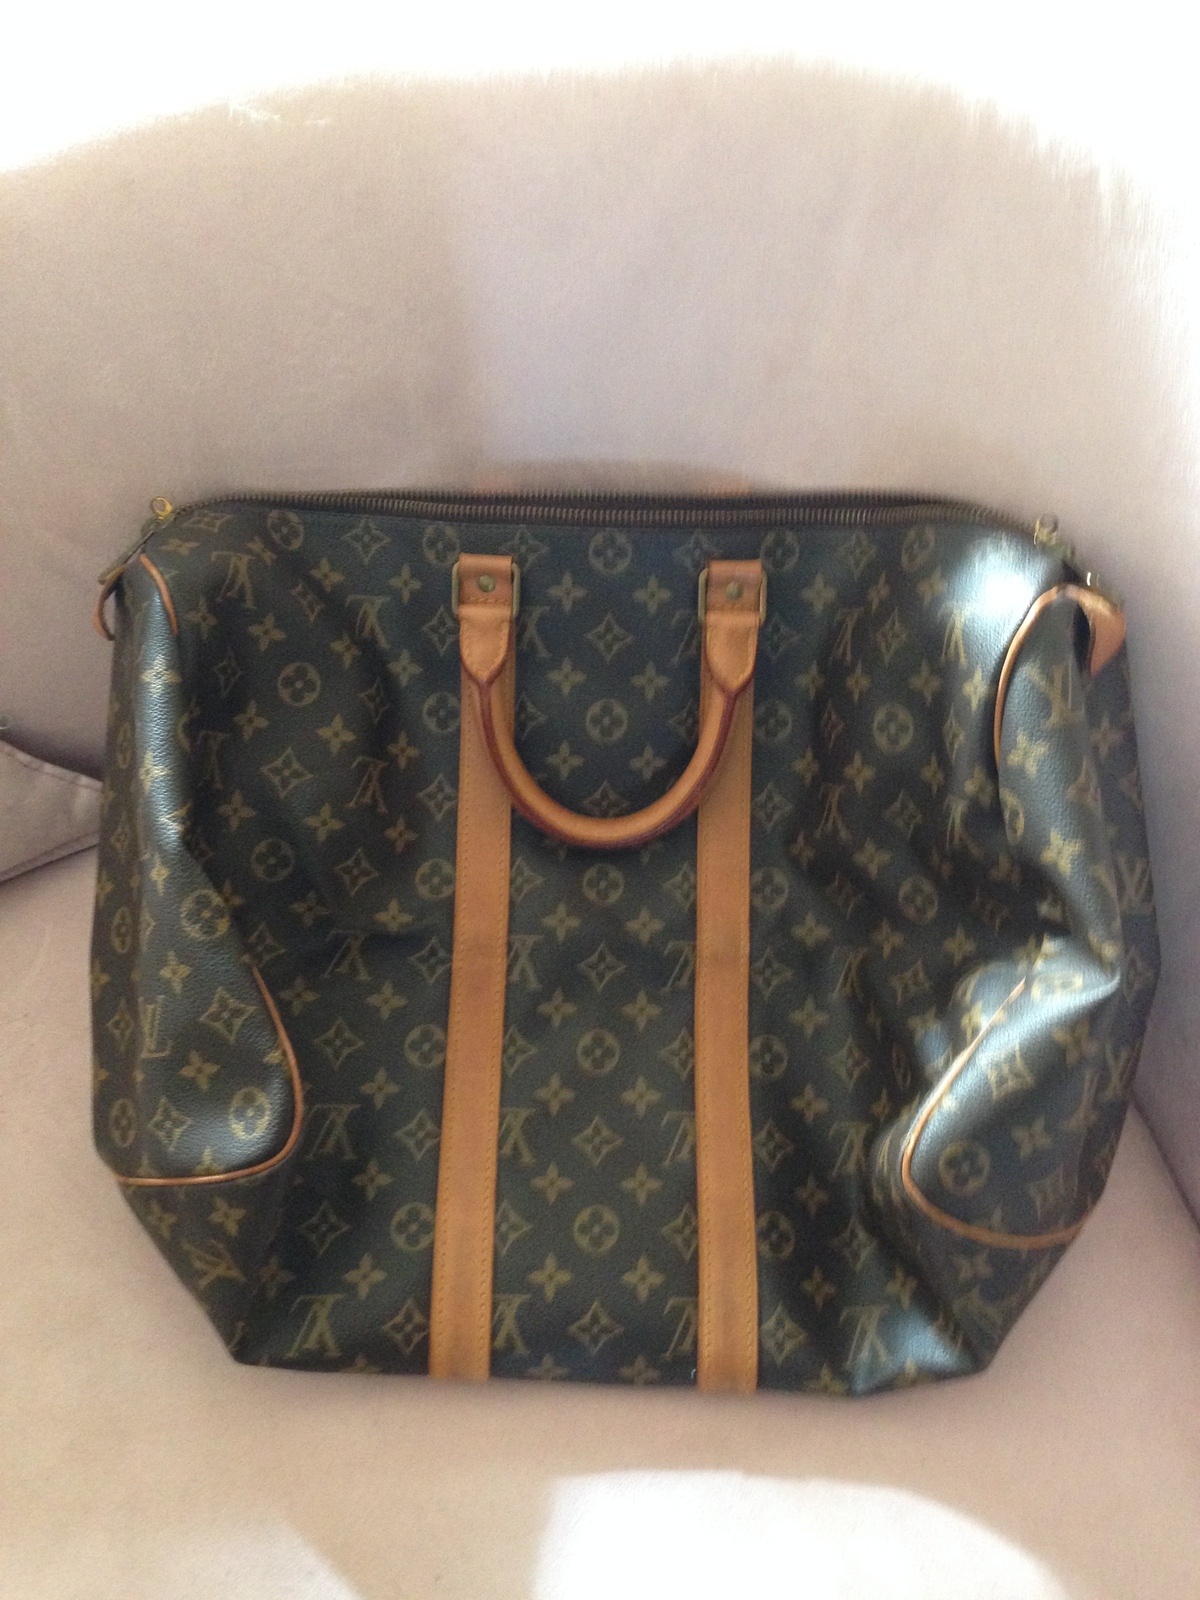 Genuine Louis Vuitton Gym Bag 45 - carry all Bag - Handbag Accessories